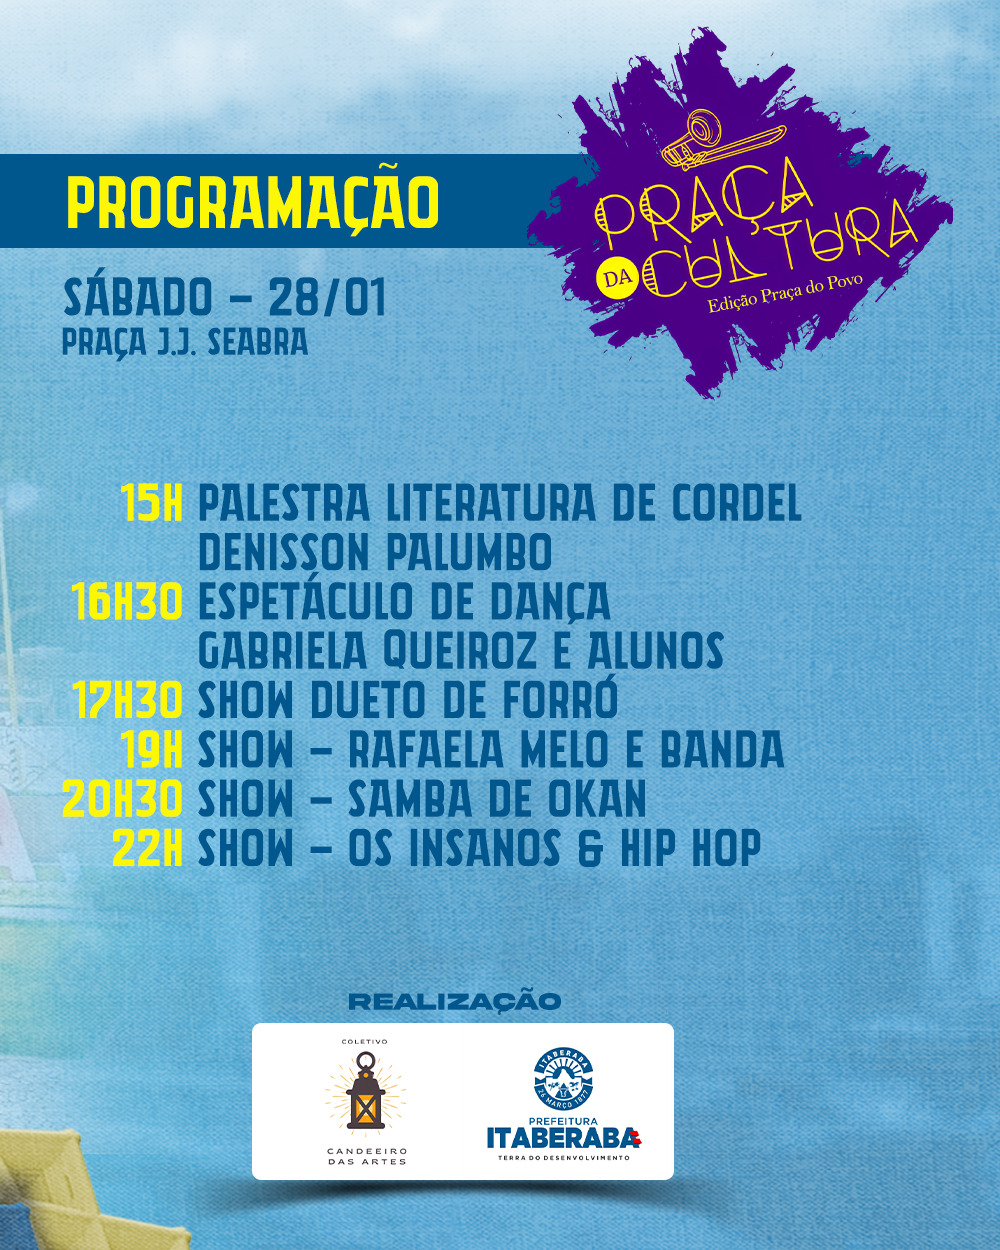 Para celebrar as amizades e a cultura brasileira, Sogipa realiza mais uma  edição do Feijoada, Samba e Cia. Convites à disposição, Notícias